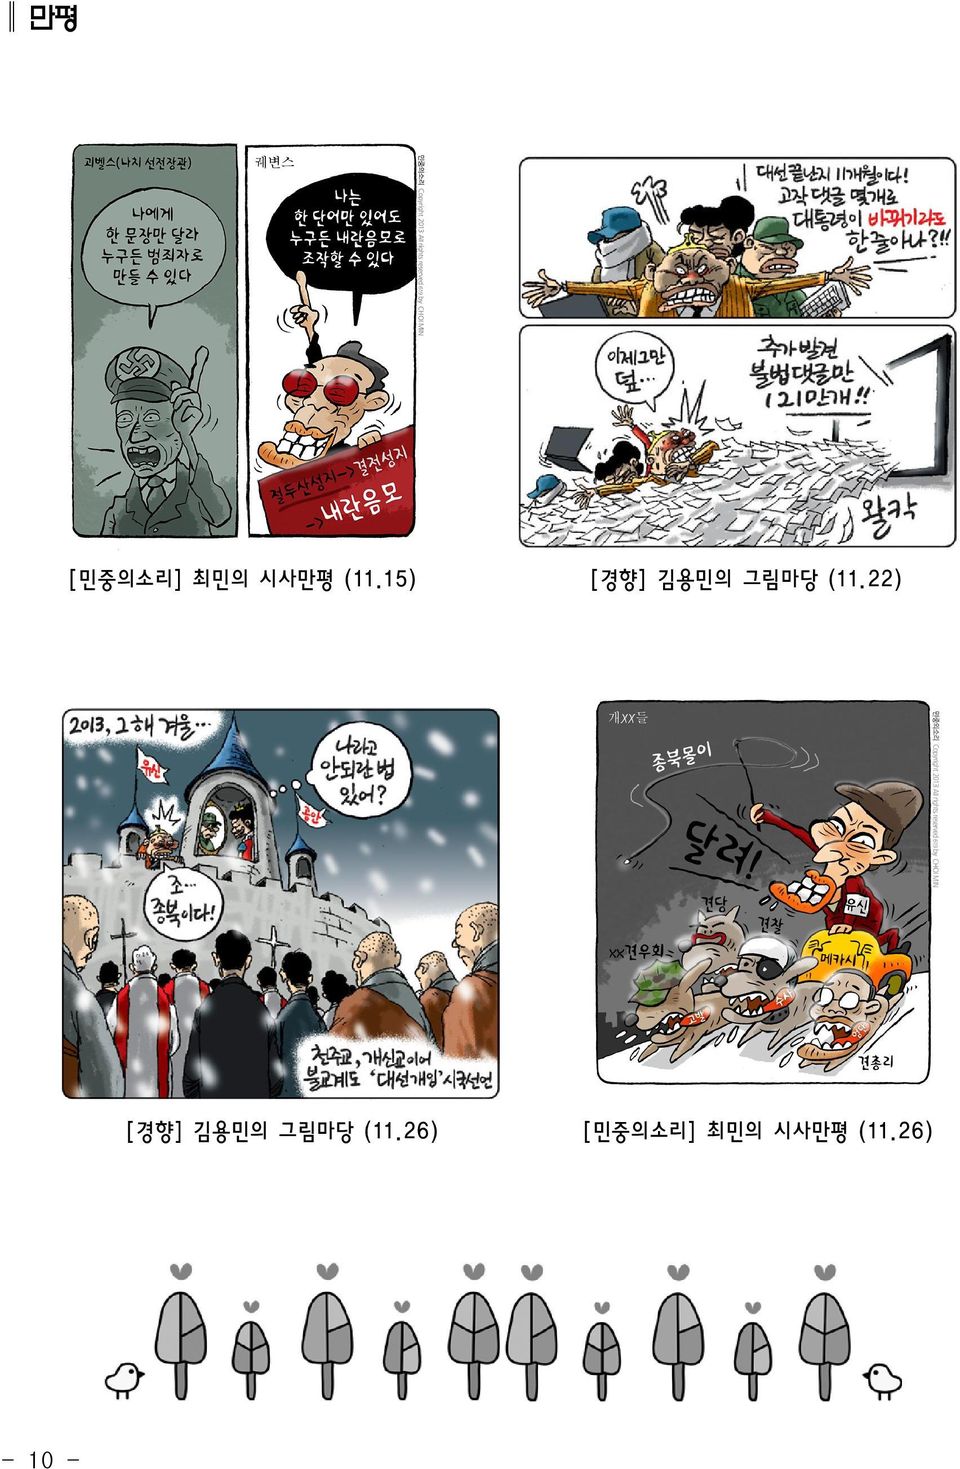 26) - 10 - [경향] 김용민의 그림마당